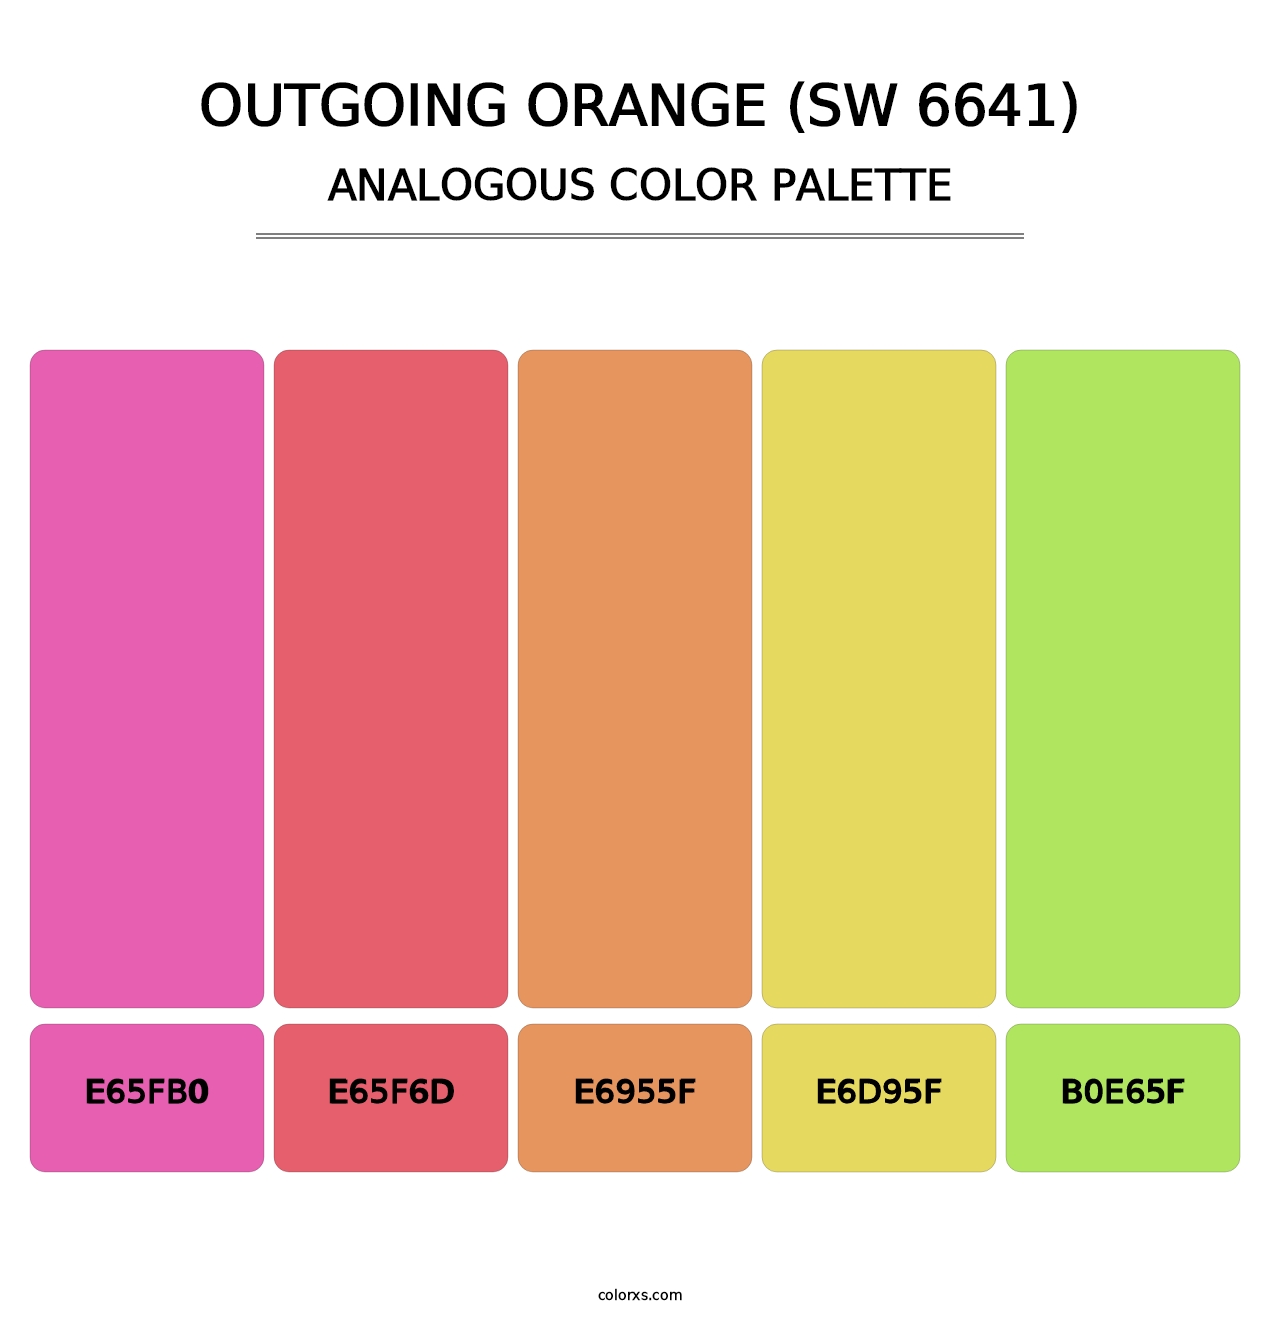 Outgoing Orange (SW 6641) - Analogous Color Palette